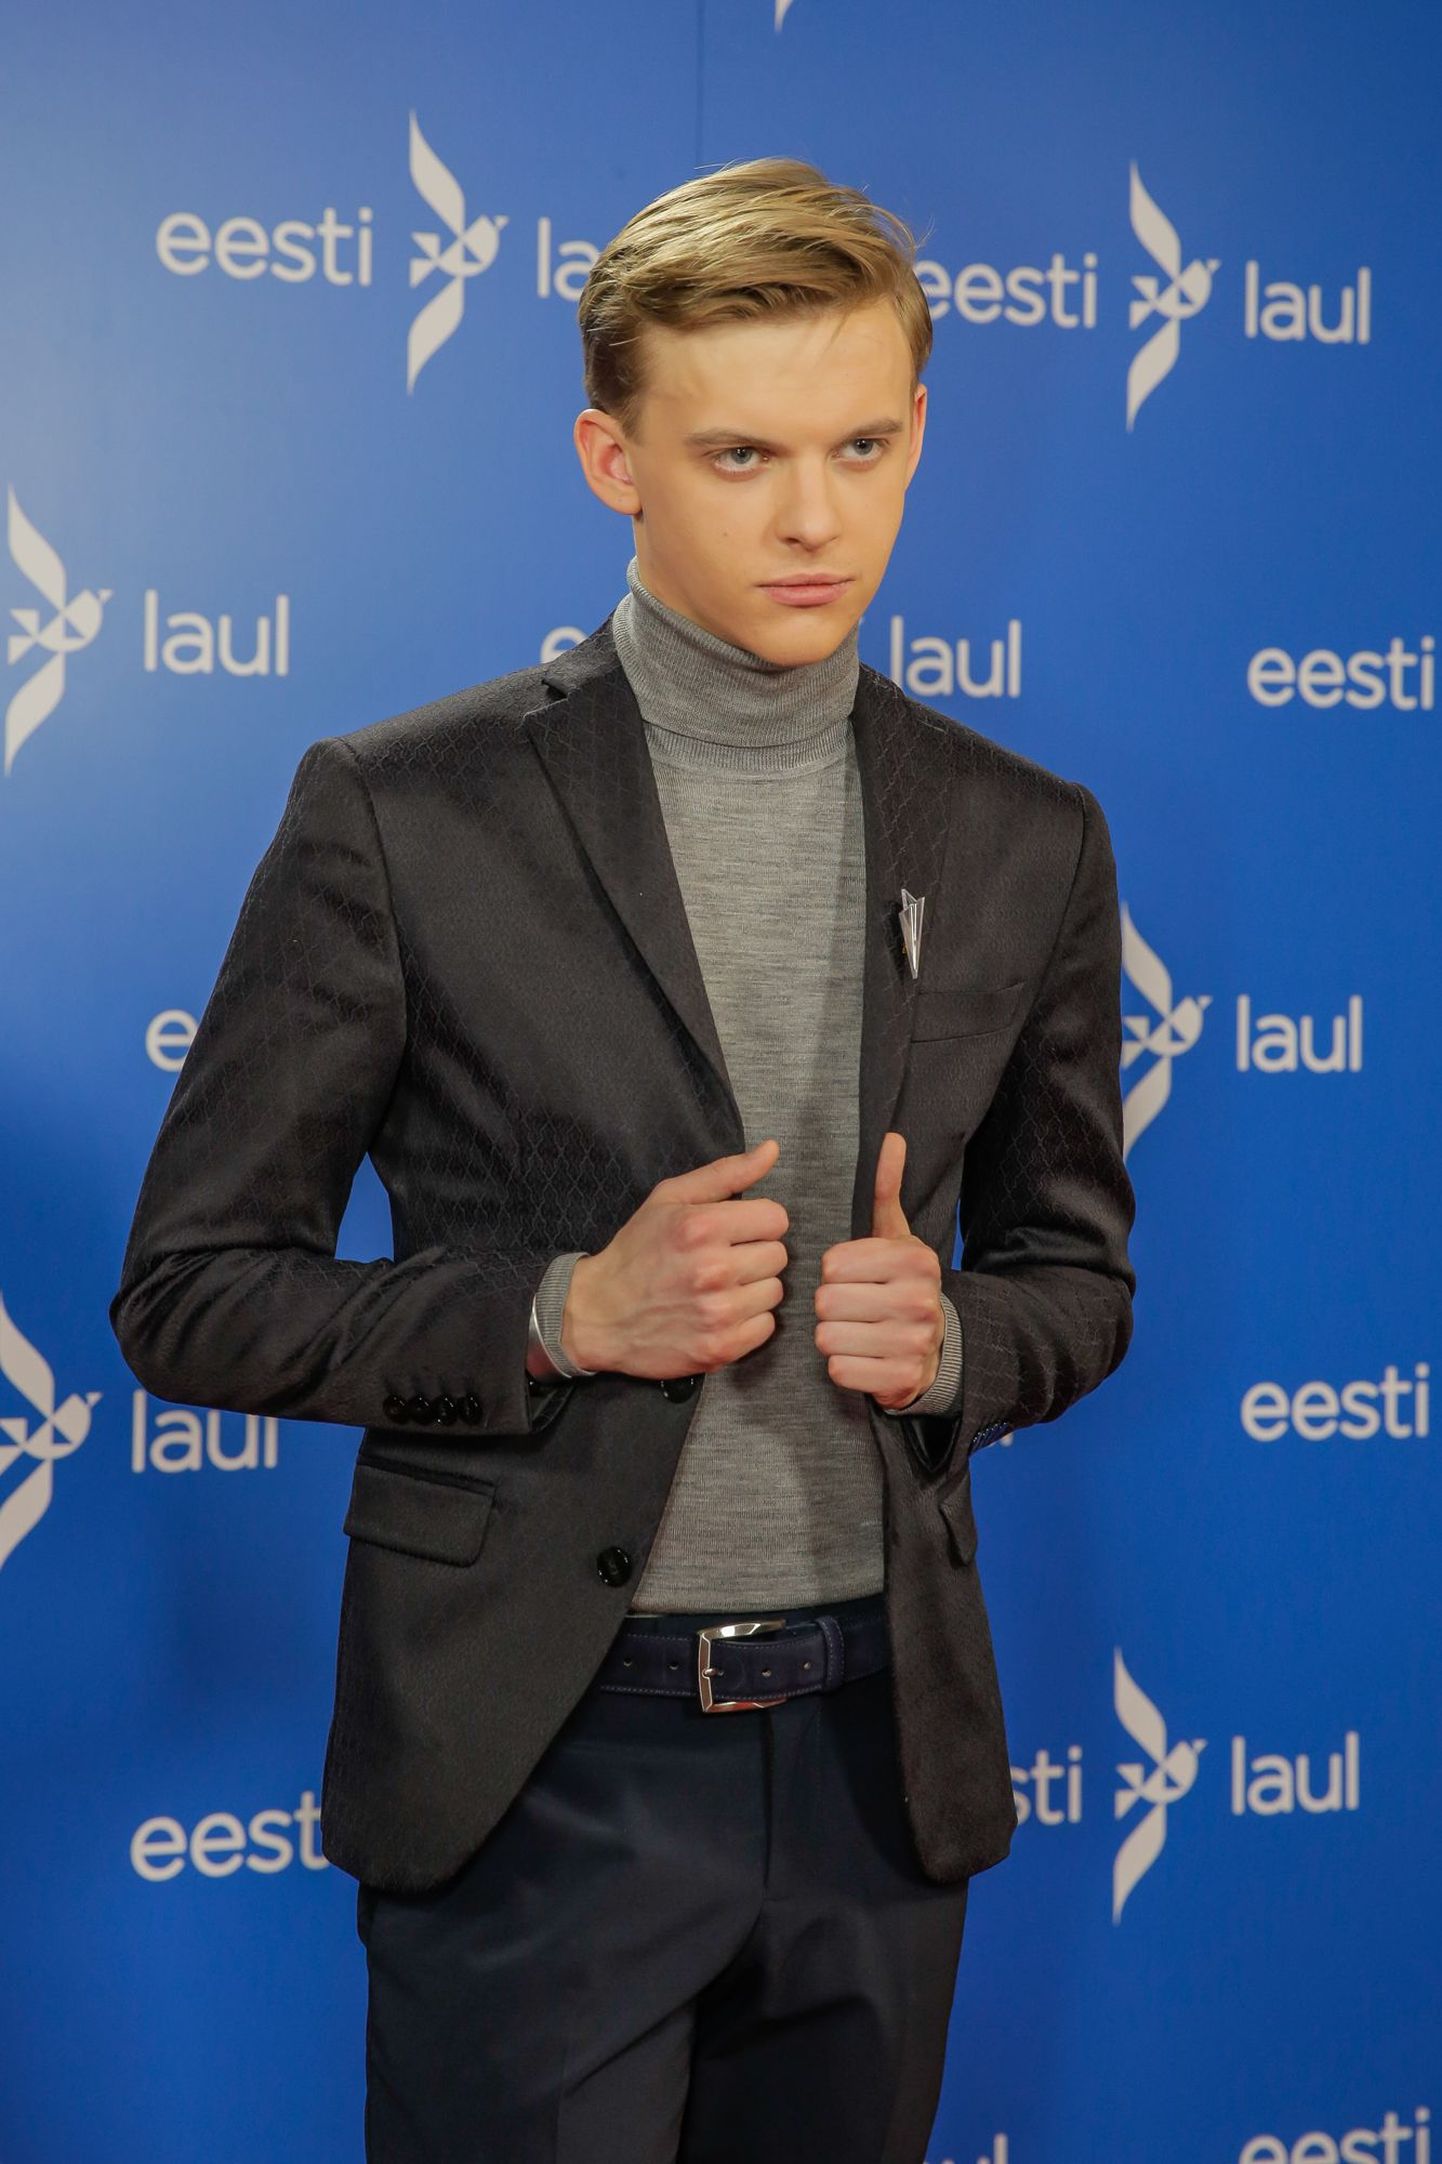 Eesti Laul 2016 teise poolfinaali salvestamine, Jüri Pootsmann